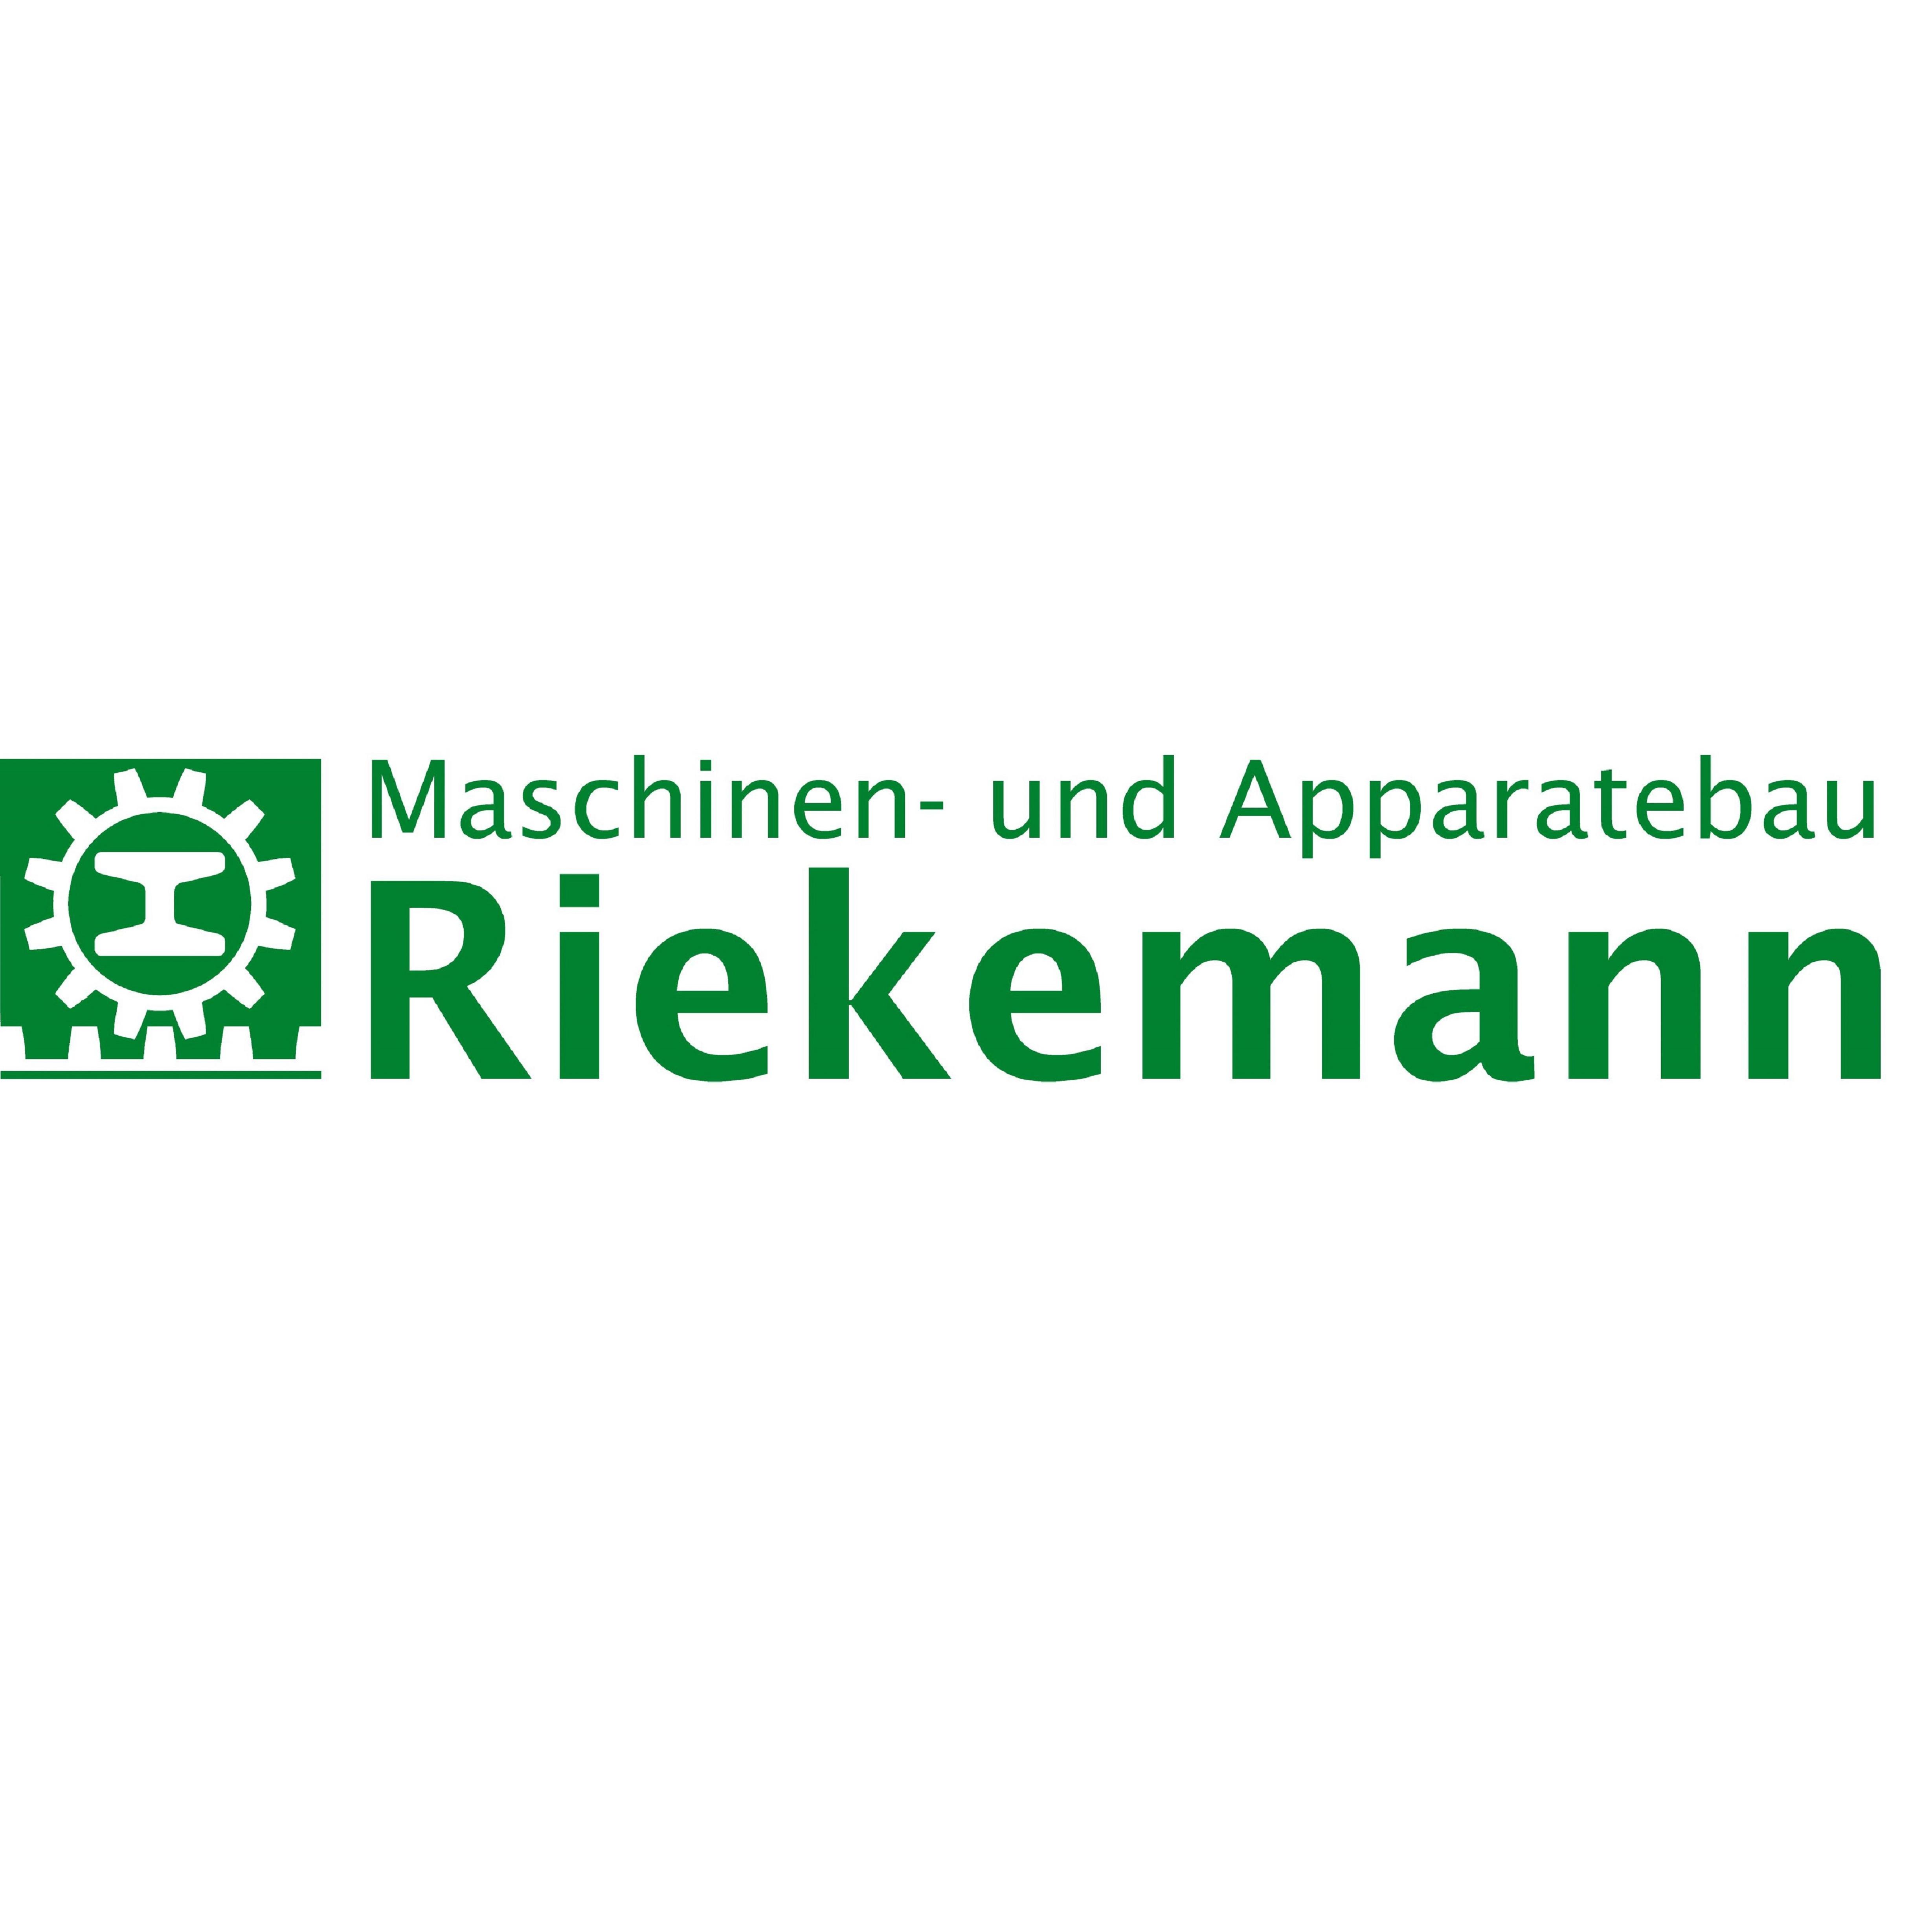 Maschinen- und Apparatebau Riekemann GmbH & Co. KG Logo